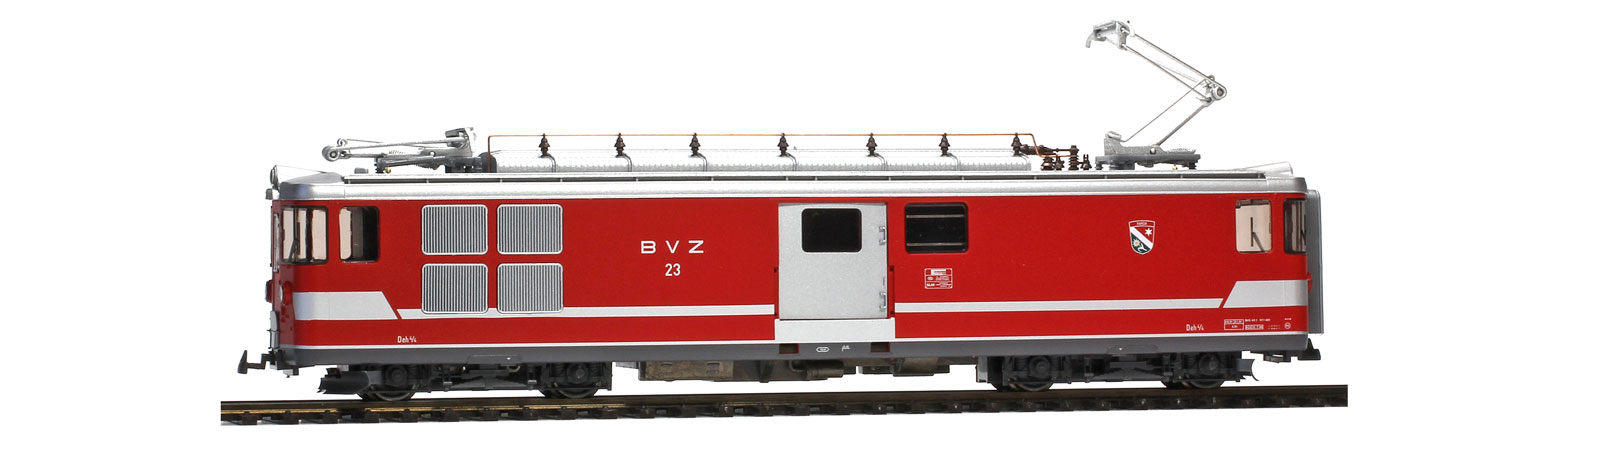 BVZ Deh 4/4 23 Randa Gepack - 1263513